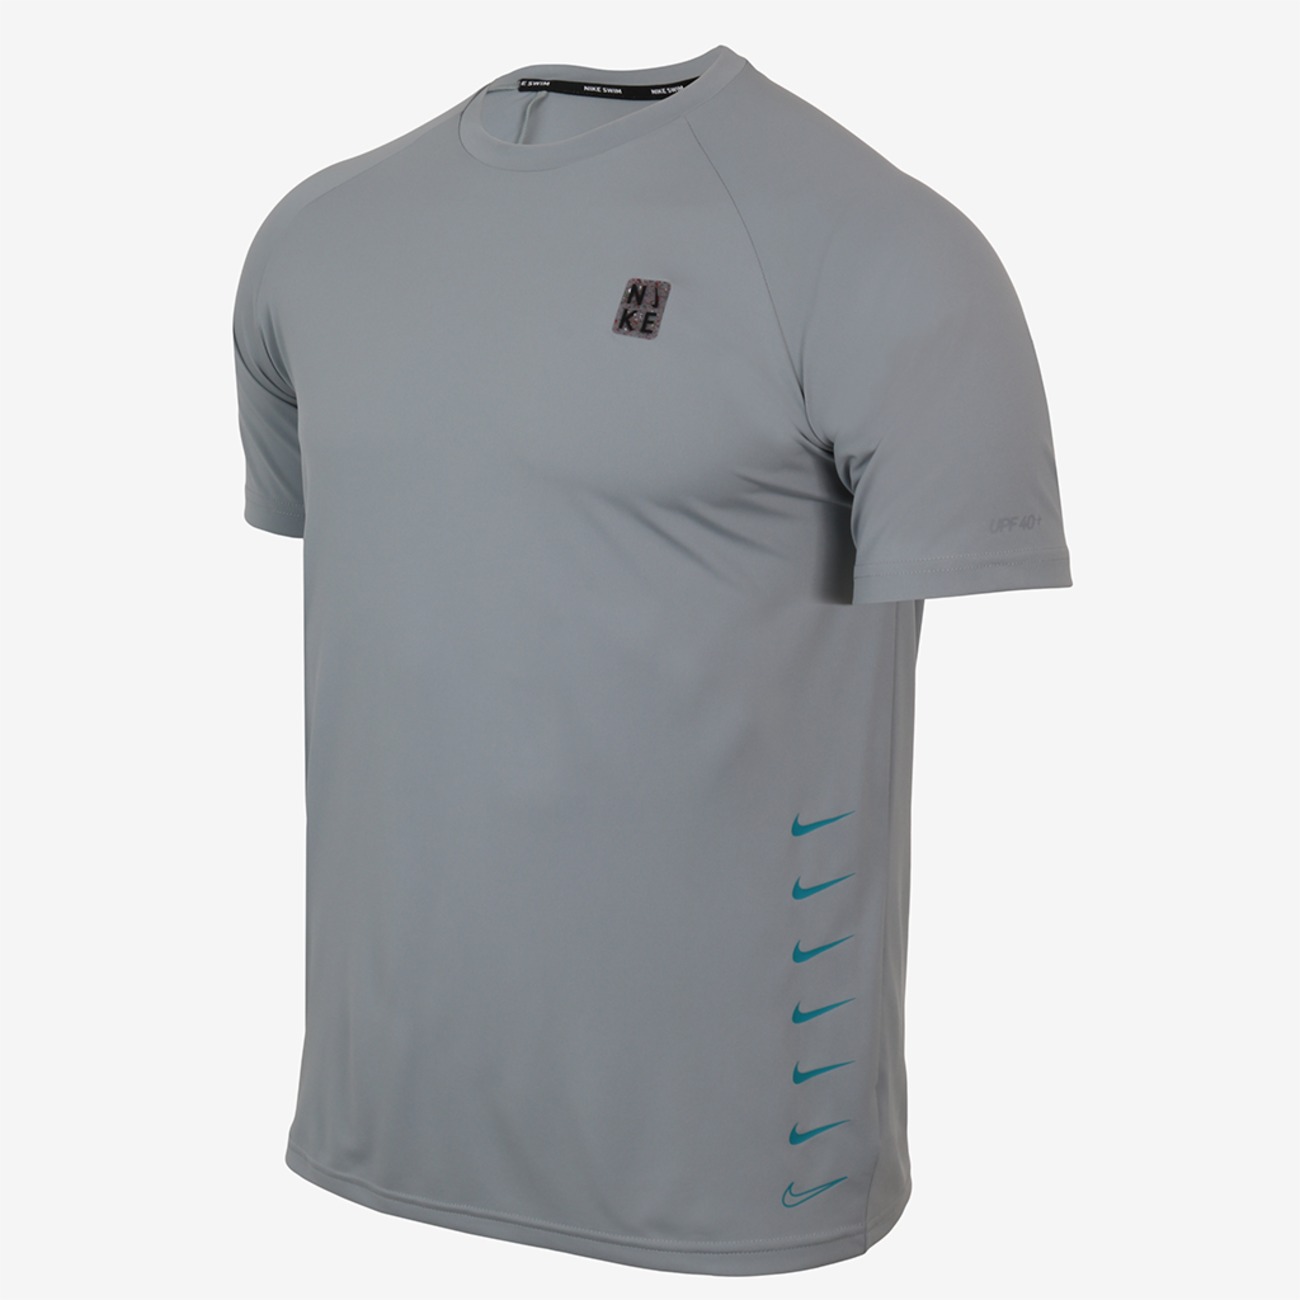 Camiseta Nike Hydroguard MultiSwoosh UV Masculina - Foto 1